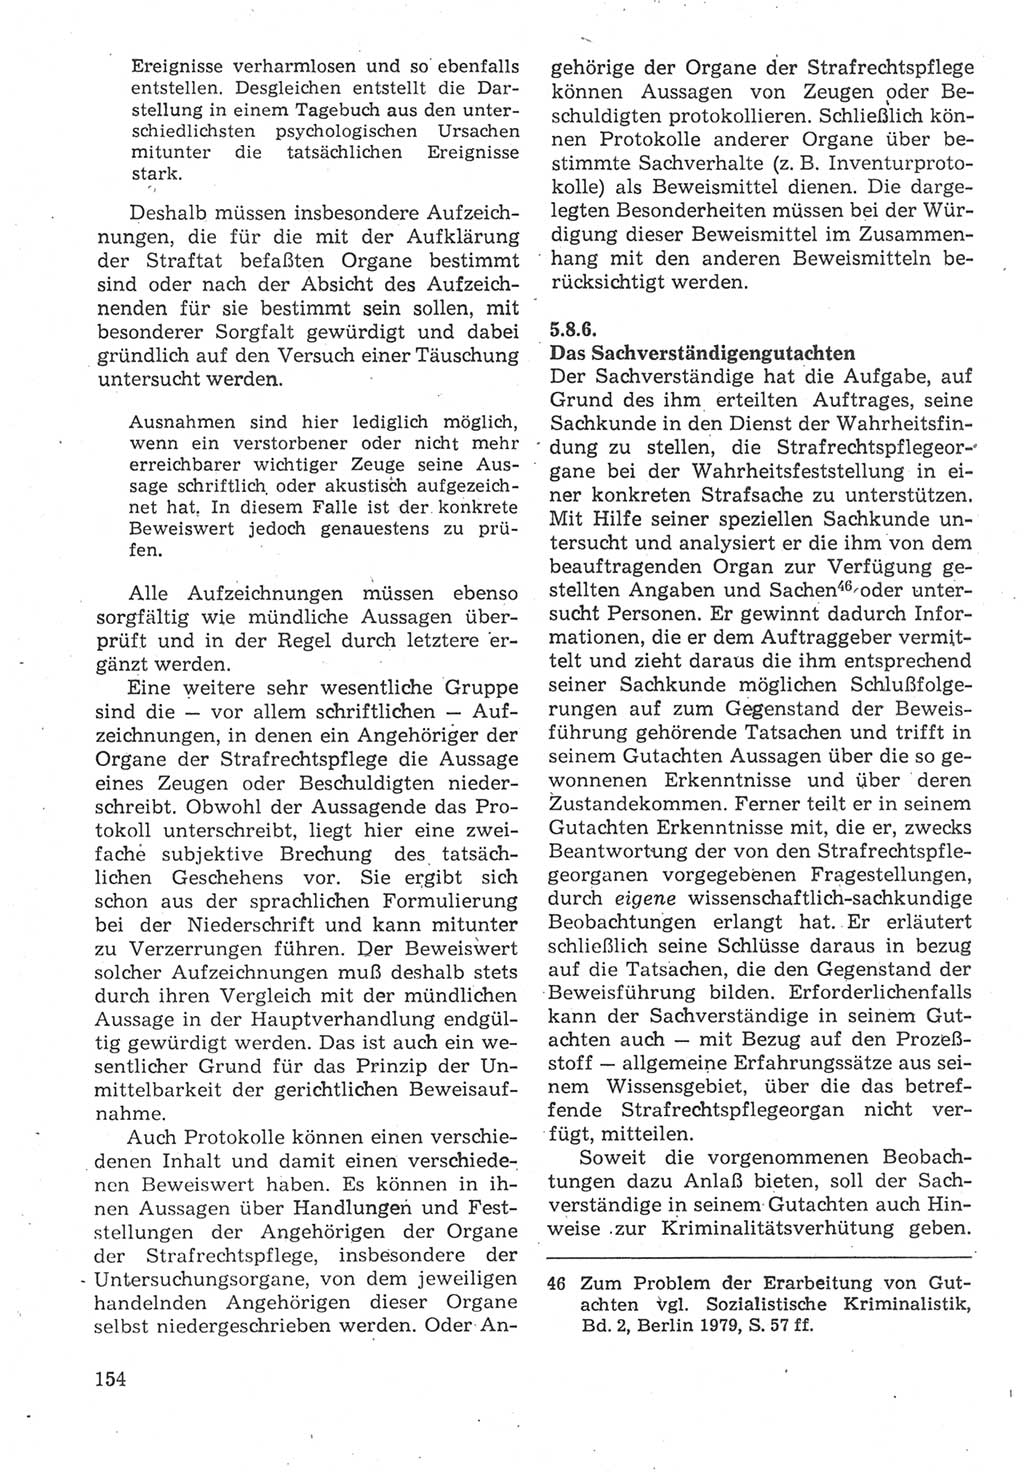 Strafverfahrensrecht [Deutsche Demokratische Republik (DDR)], Lehrbuch 1987, Seite 154 (Strafverf.-R. DDR Lb. 1987, S. 154)